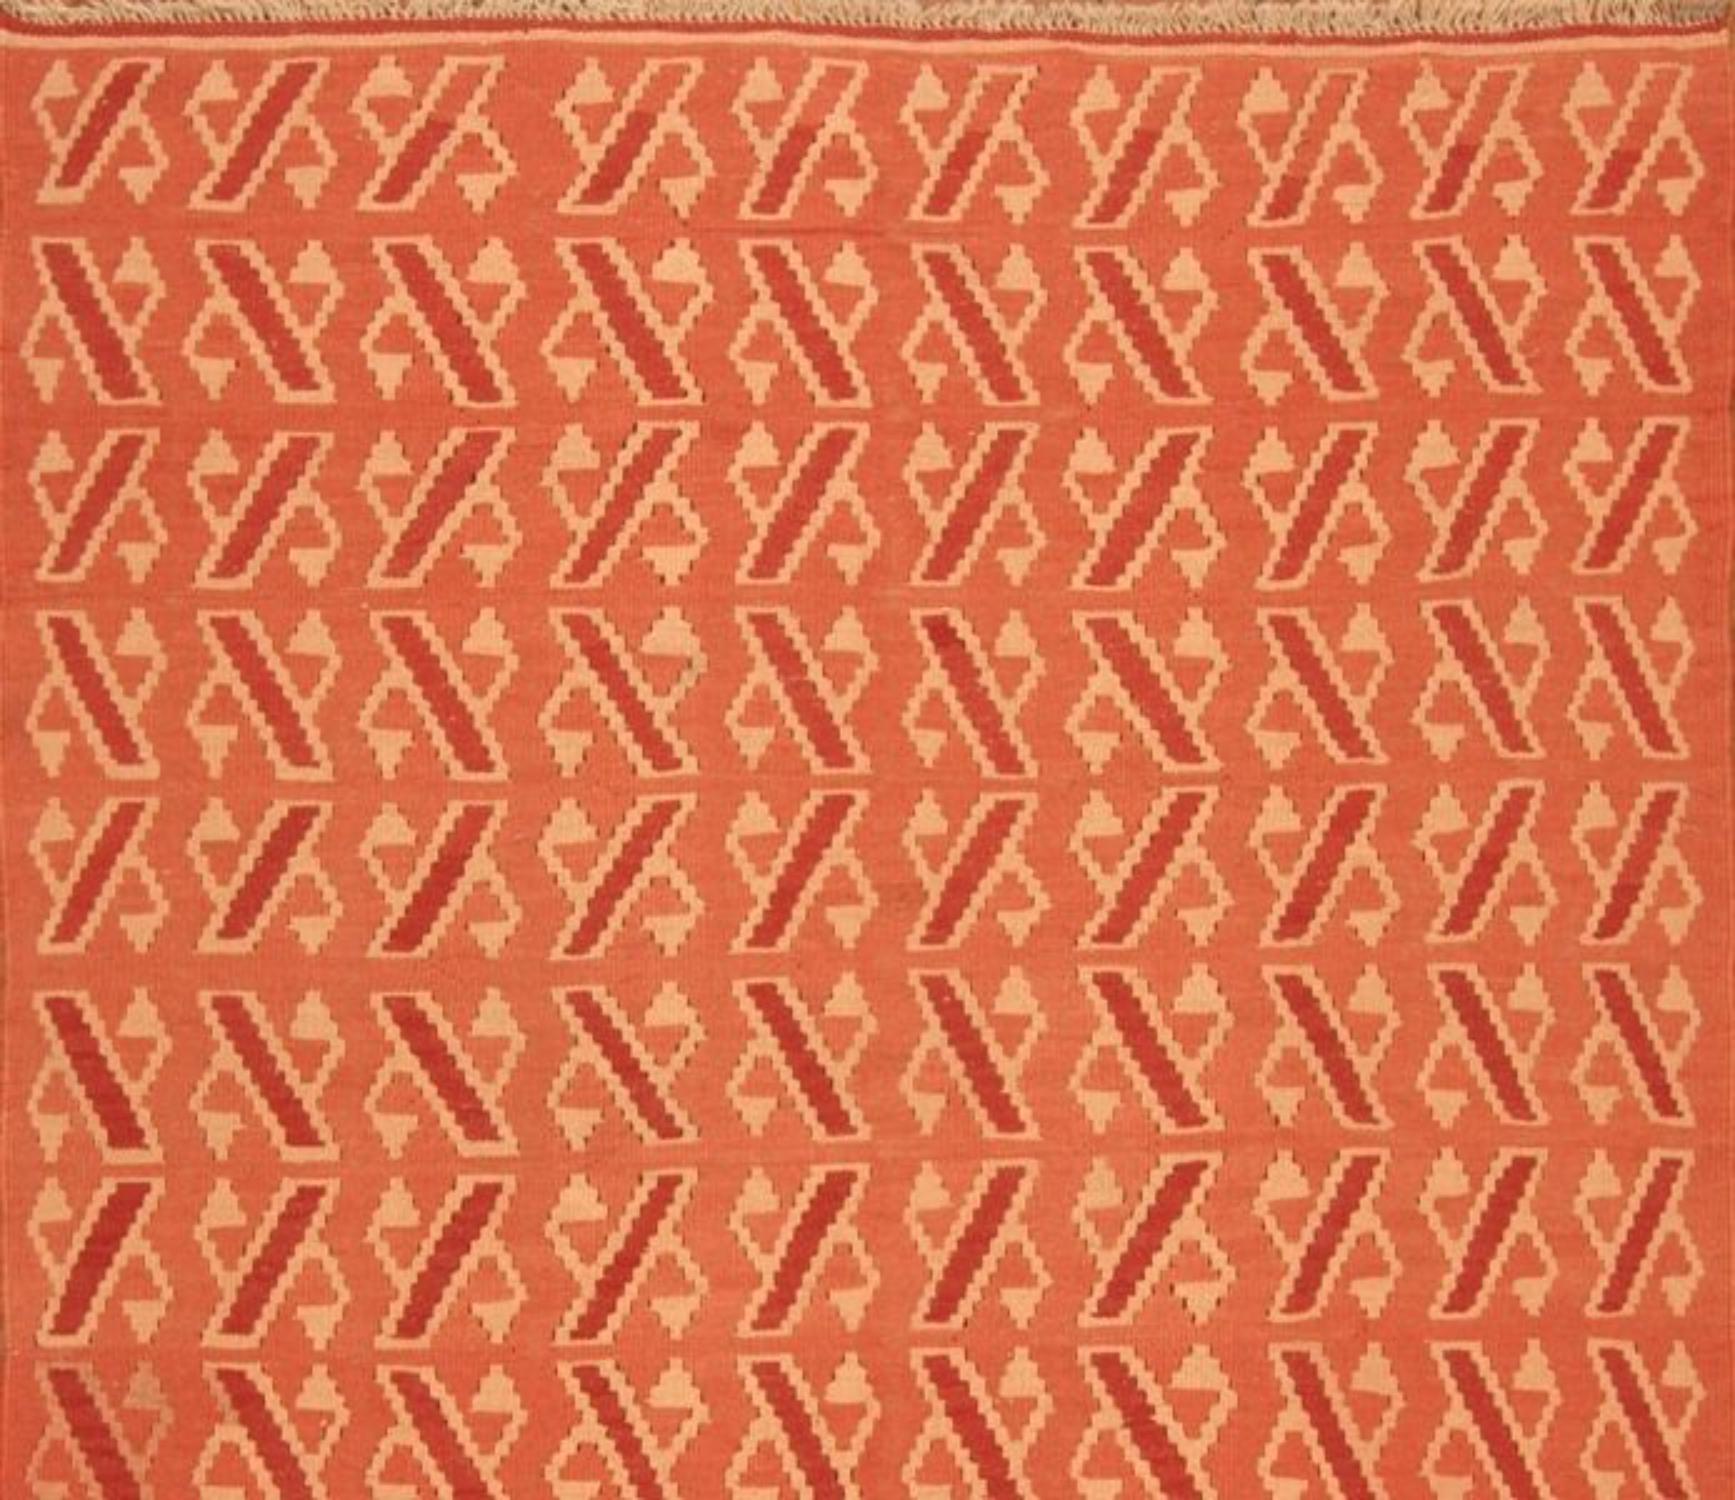 Handgefertigter Vintage Persian Style Ardabil Kilim Teppich (5' x 6.7')

Treten Sie ein in das Reich der persischen Kunst mit unserem handgefertigten Ardabil-Kilim-Teppich im persischen Vintage-Stil. Dieser in den 1970er Jahren gefertigte